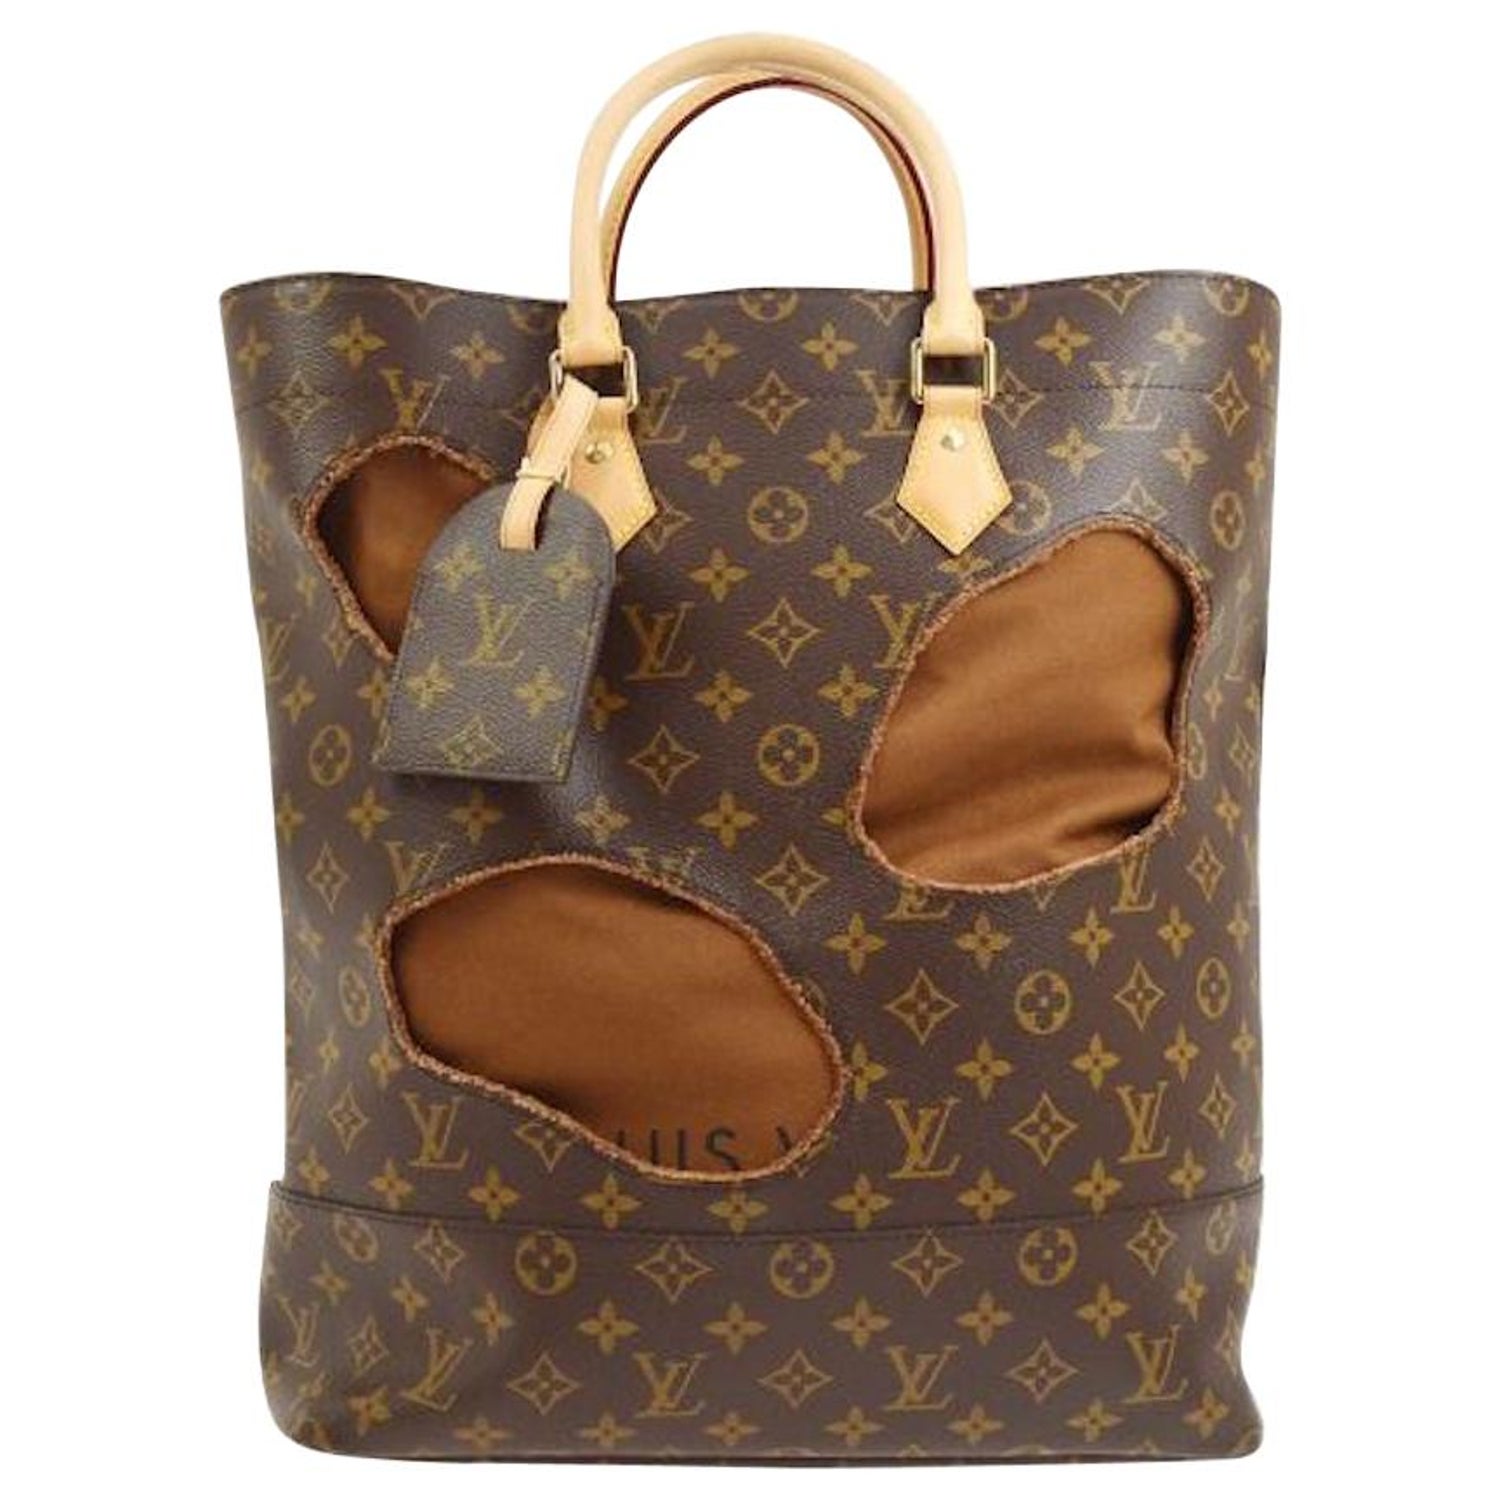 Louis Vuitton Bag With Holes Tote Handbag Comme des Garcons M40279 – AMORE  Vintage Tokyo